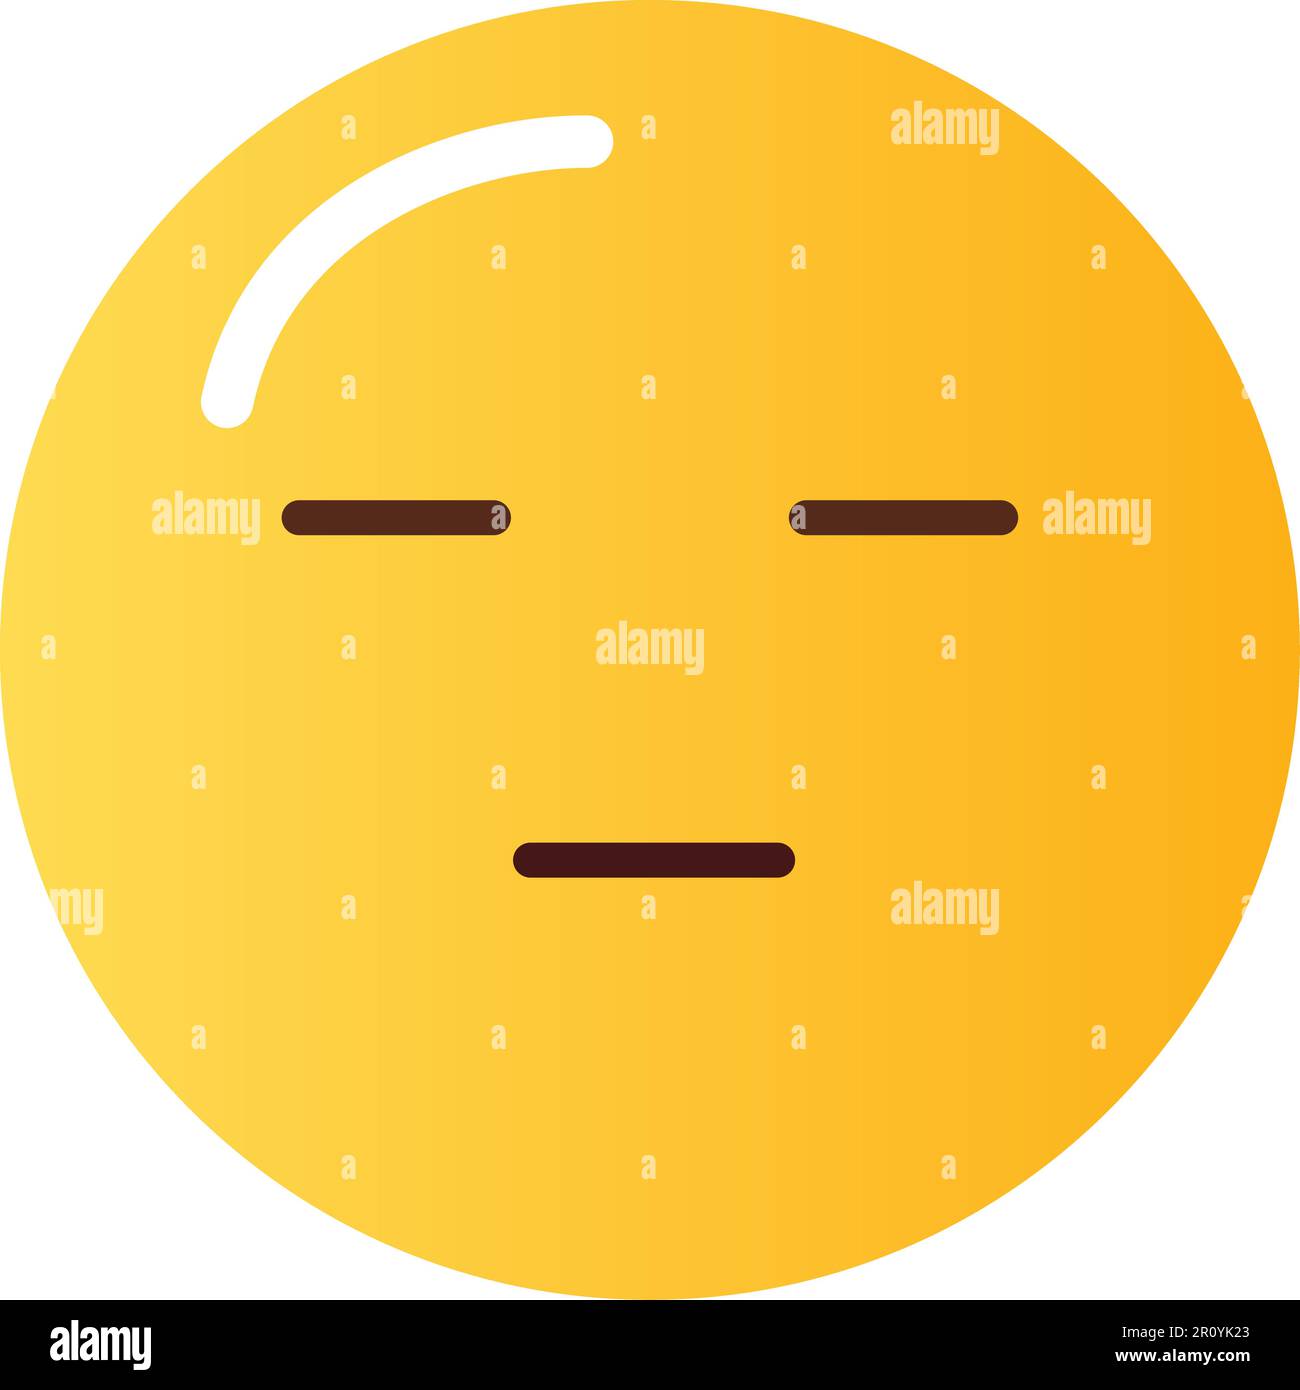 Relax Face Emoji 3D Illustration download in PNG, OBJ or Blend format